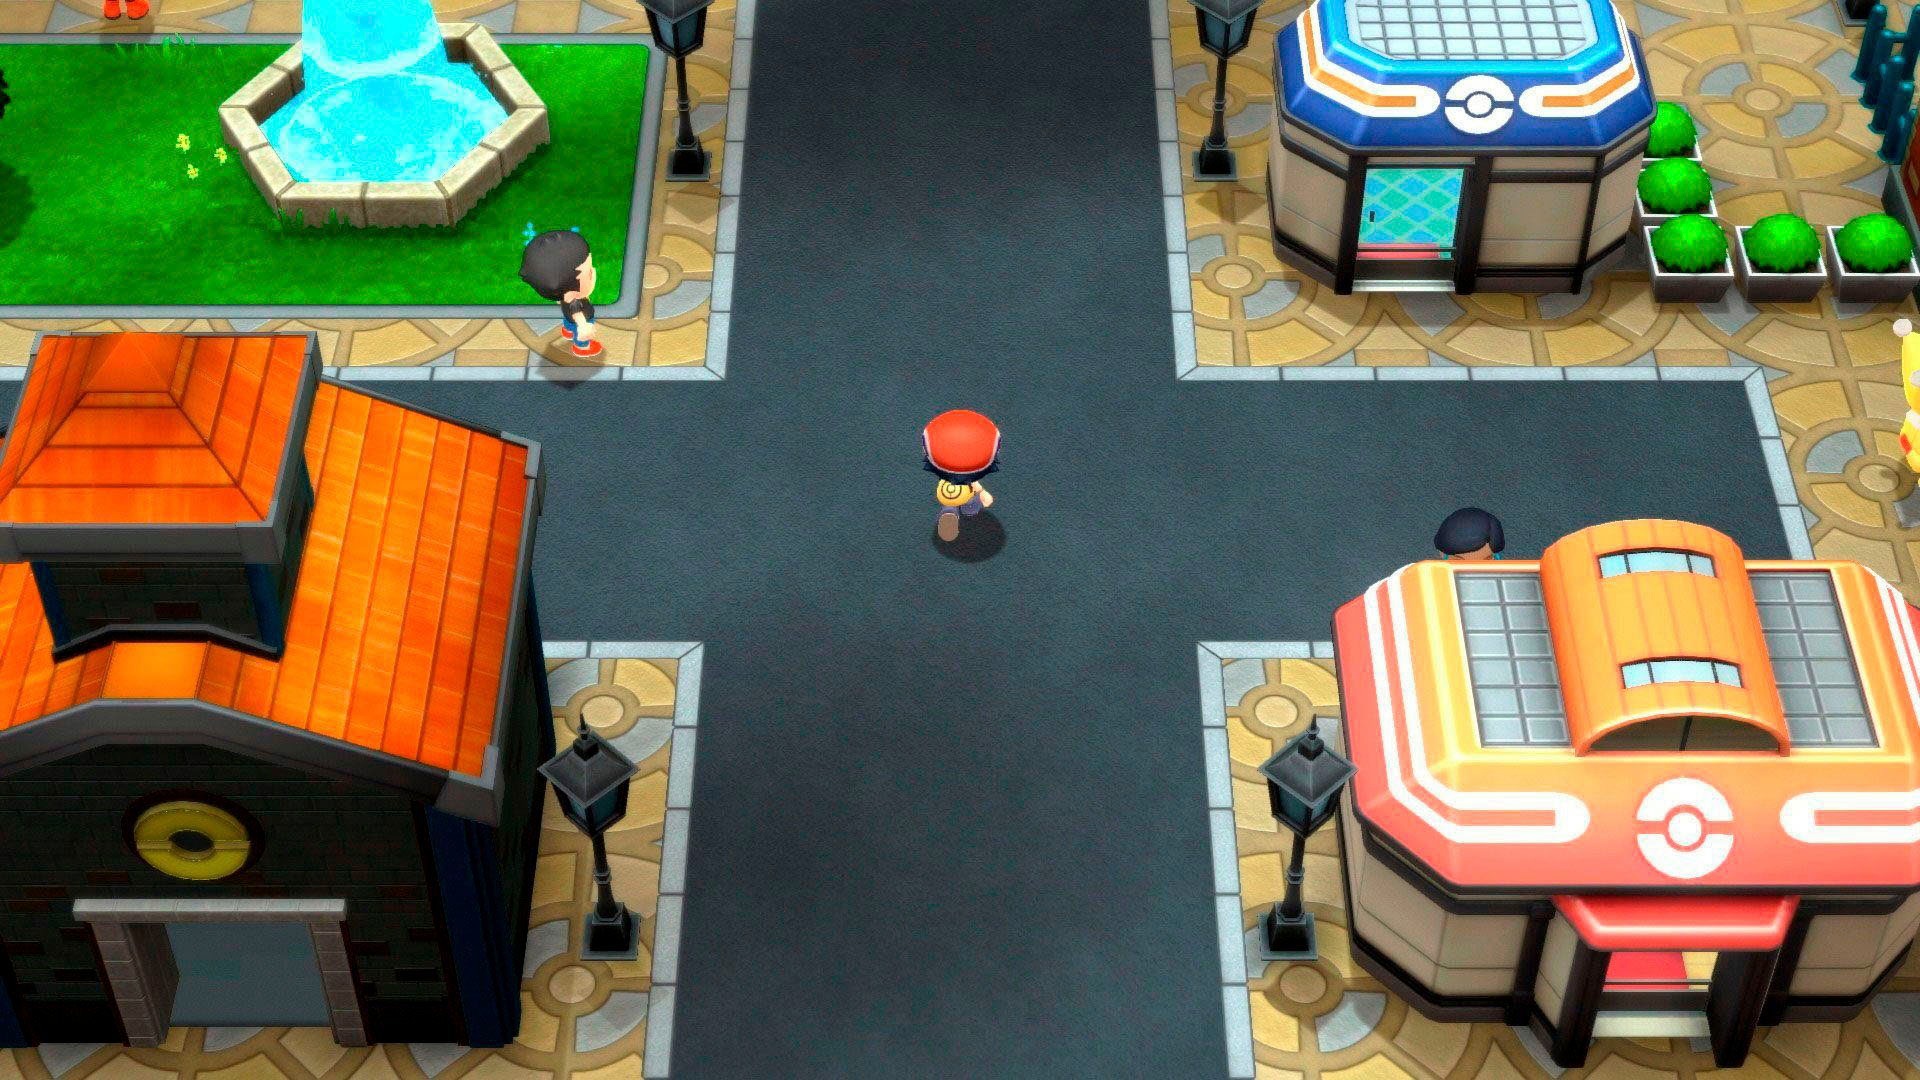 Nintendo Switch Spielekonsole, inkl. Pokémon Leuchtende Perle